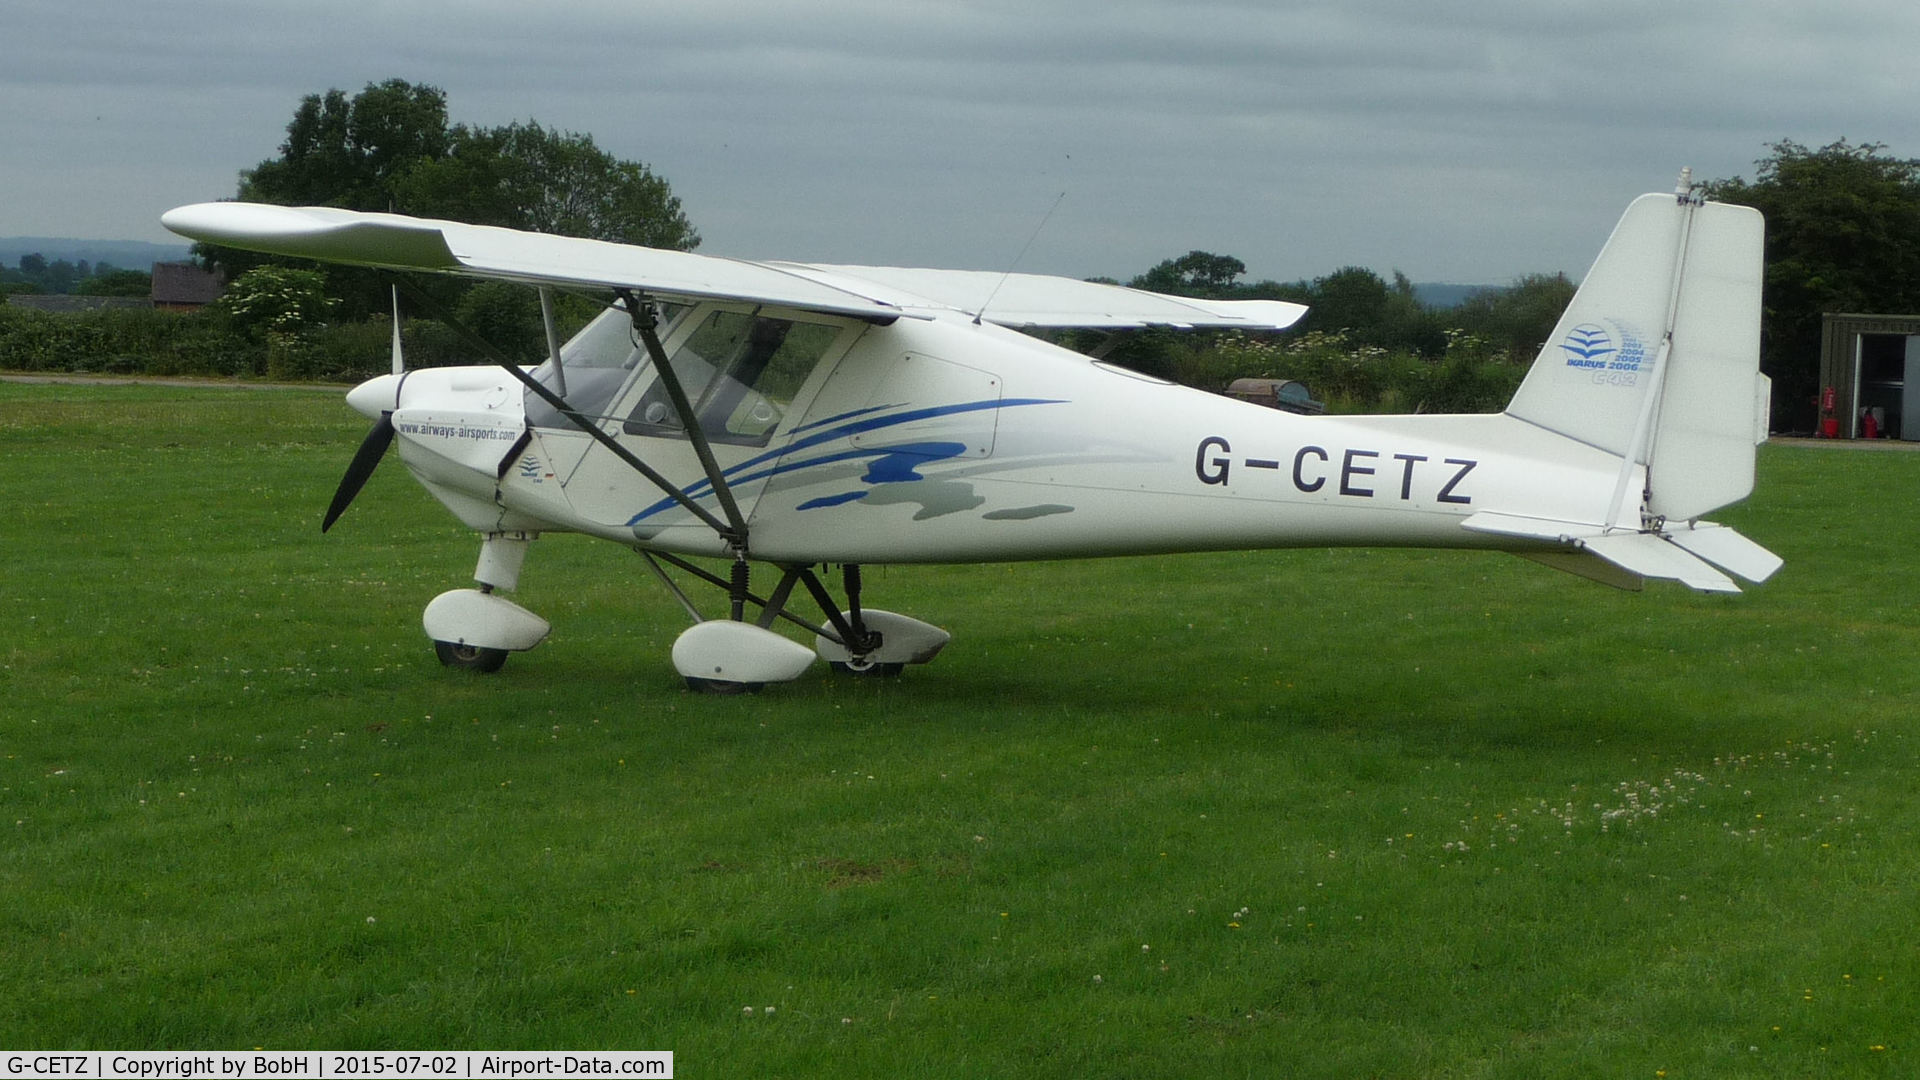 G-CETZ, 2007 Comco Ikarus C42 FB100 C/N 0706-6899, Taken at Darley Moor Airfield Nr. Ashbourne.